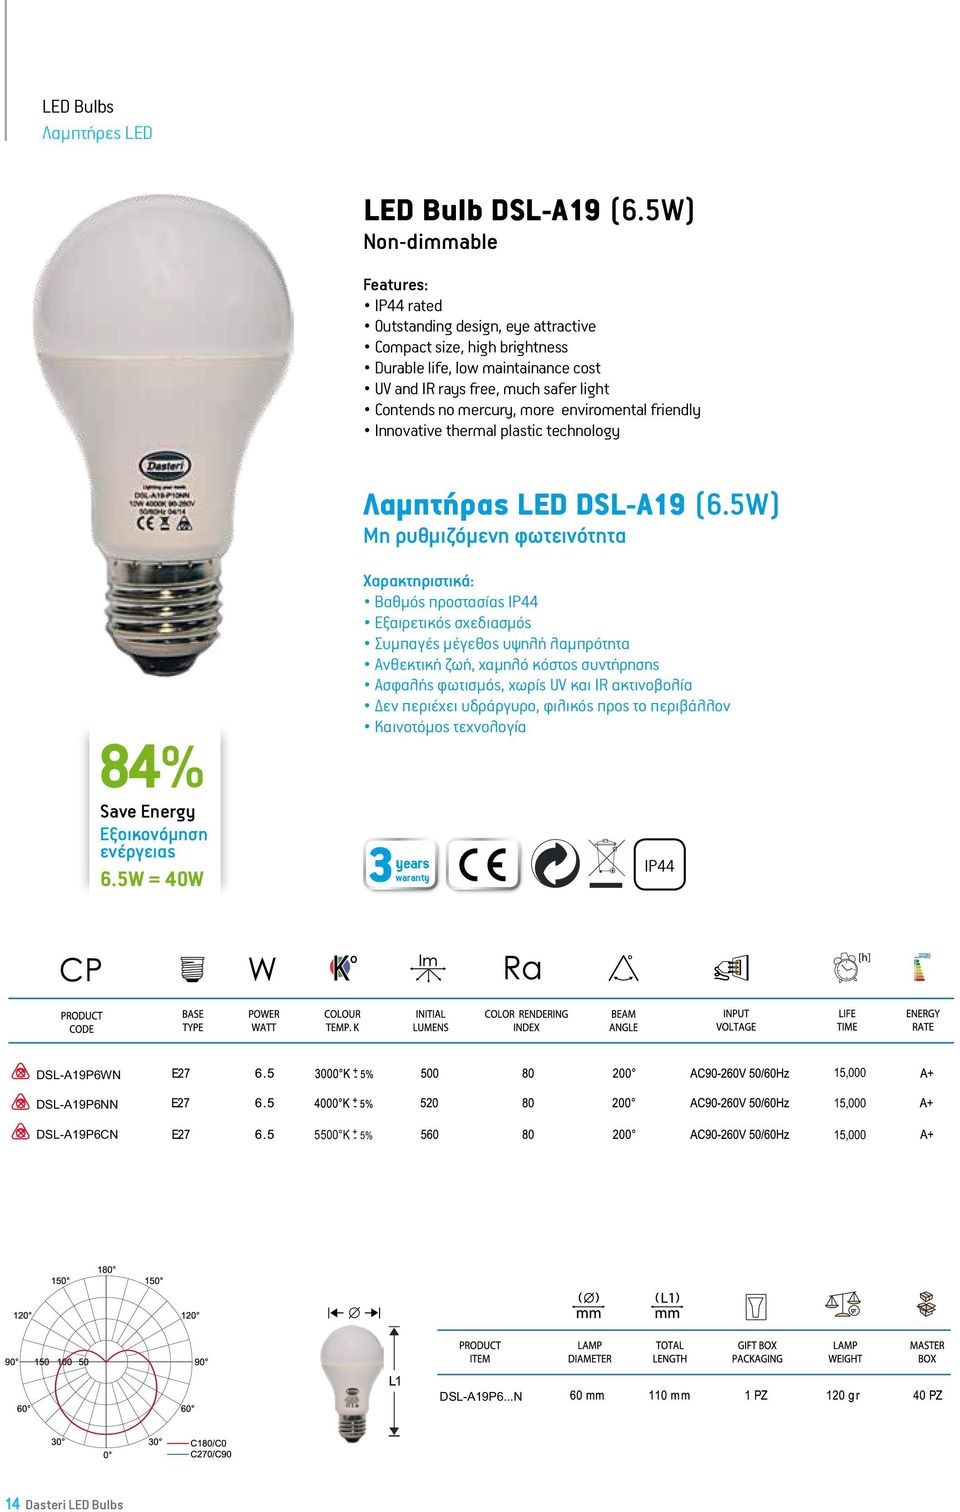 Λαμπτήρας LED DSL-A19 (6.5W) Μη ρυθμιζόμενη φωτεινότητα 84% LED A19 Bulb-6.